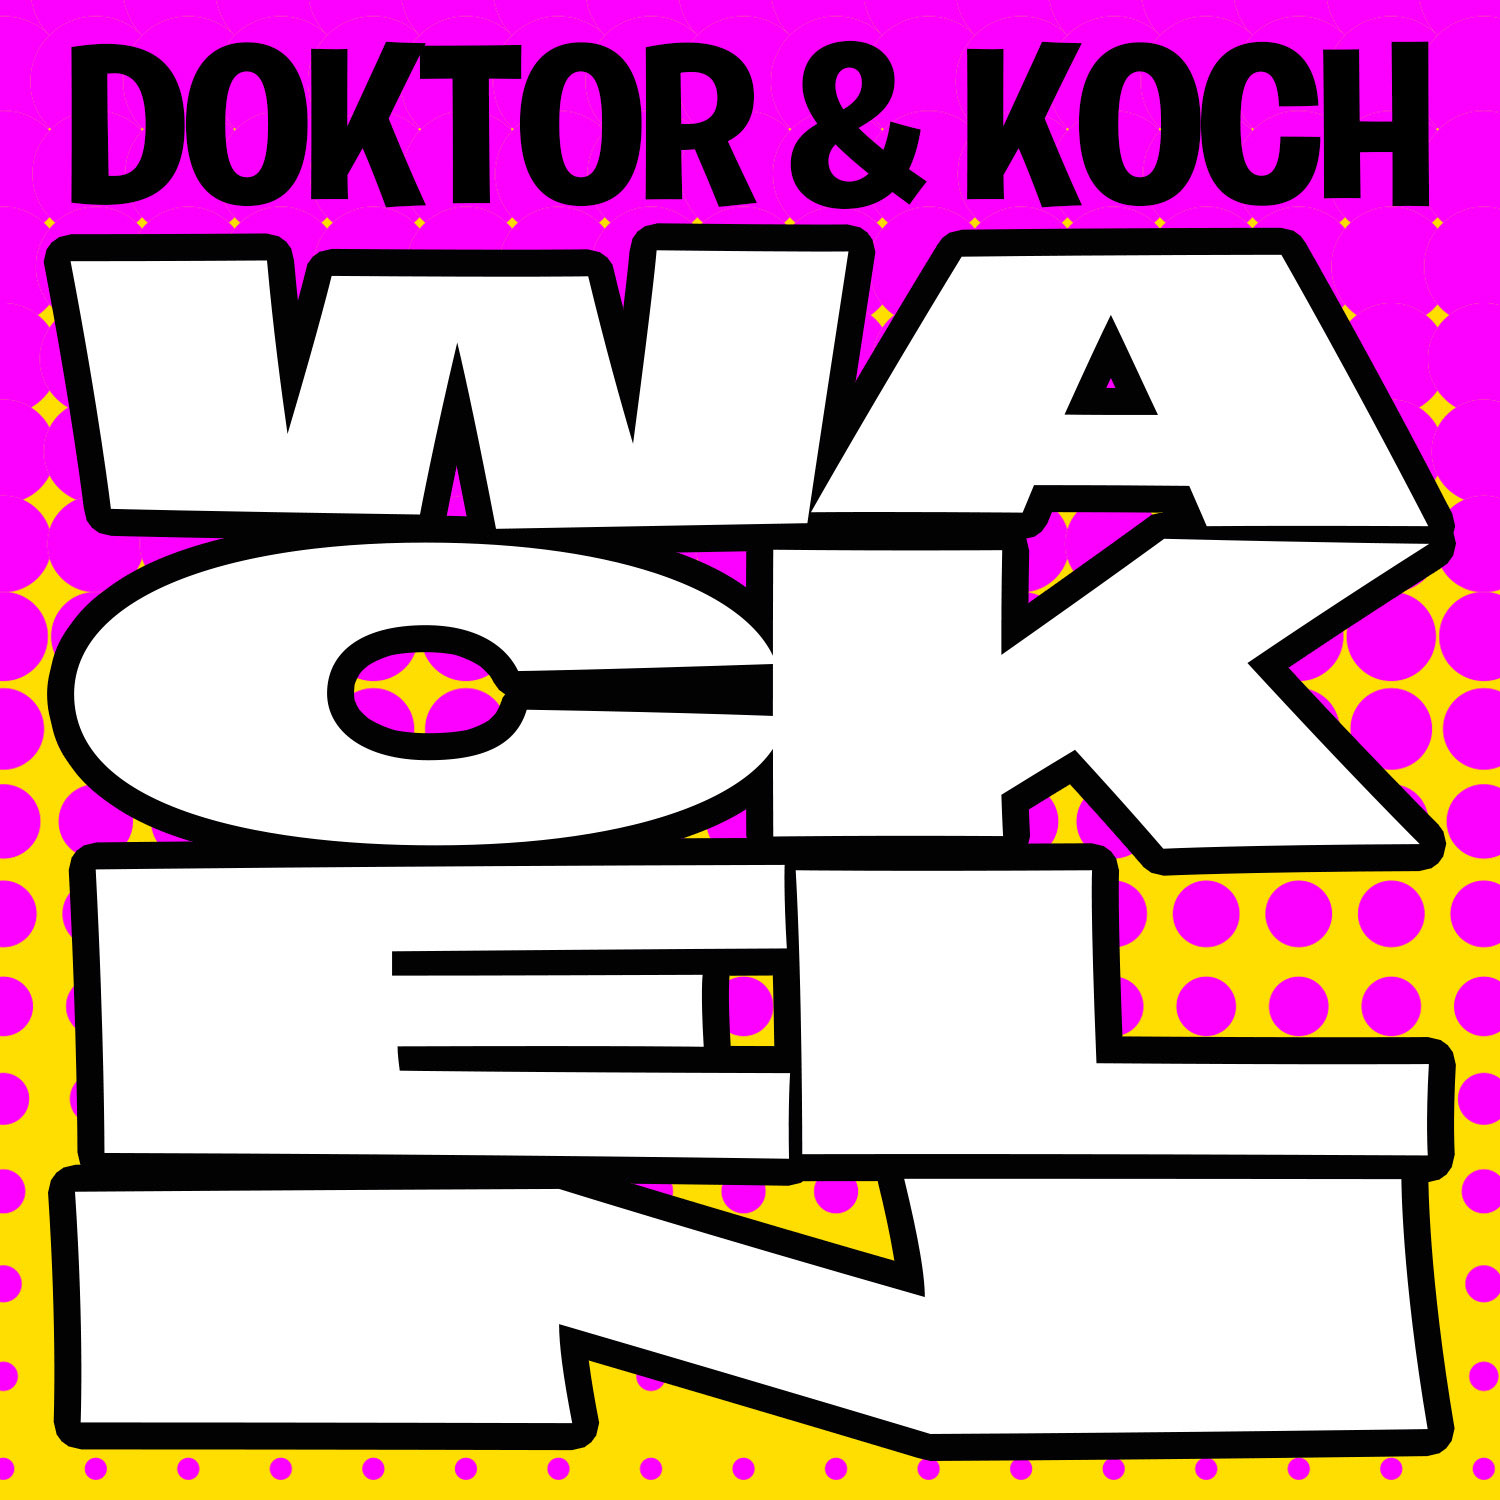 Doktor & Koch - ”Wackeln”